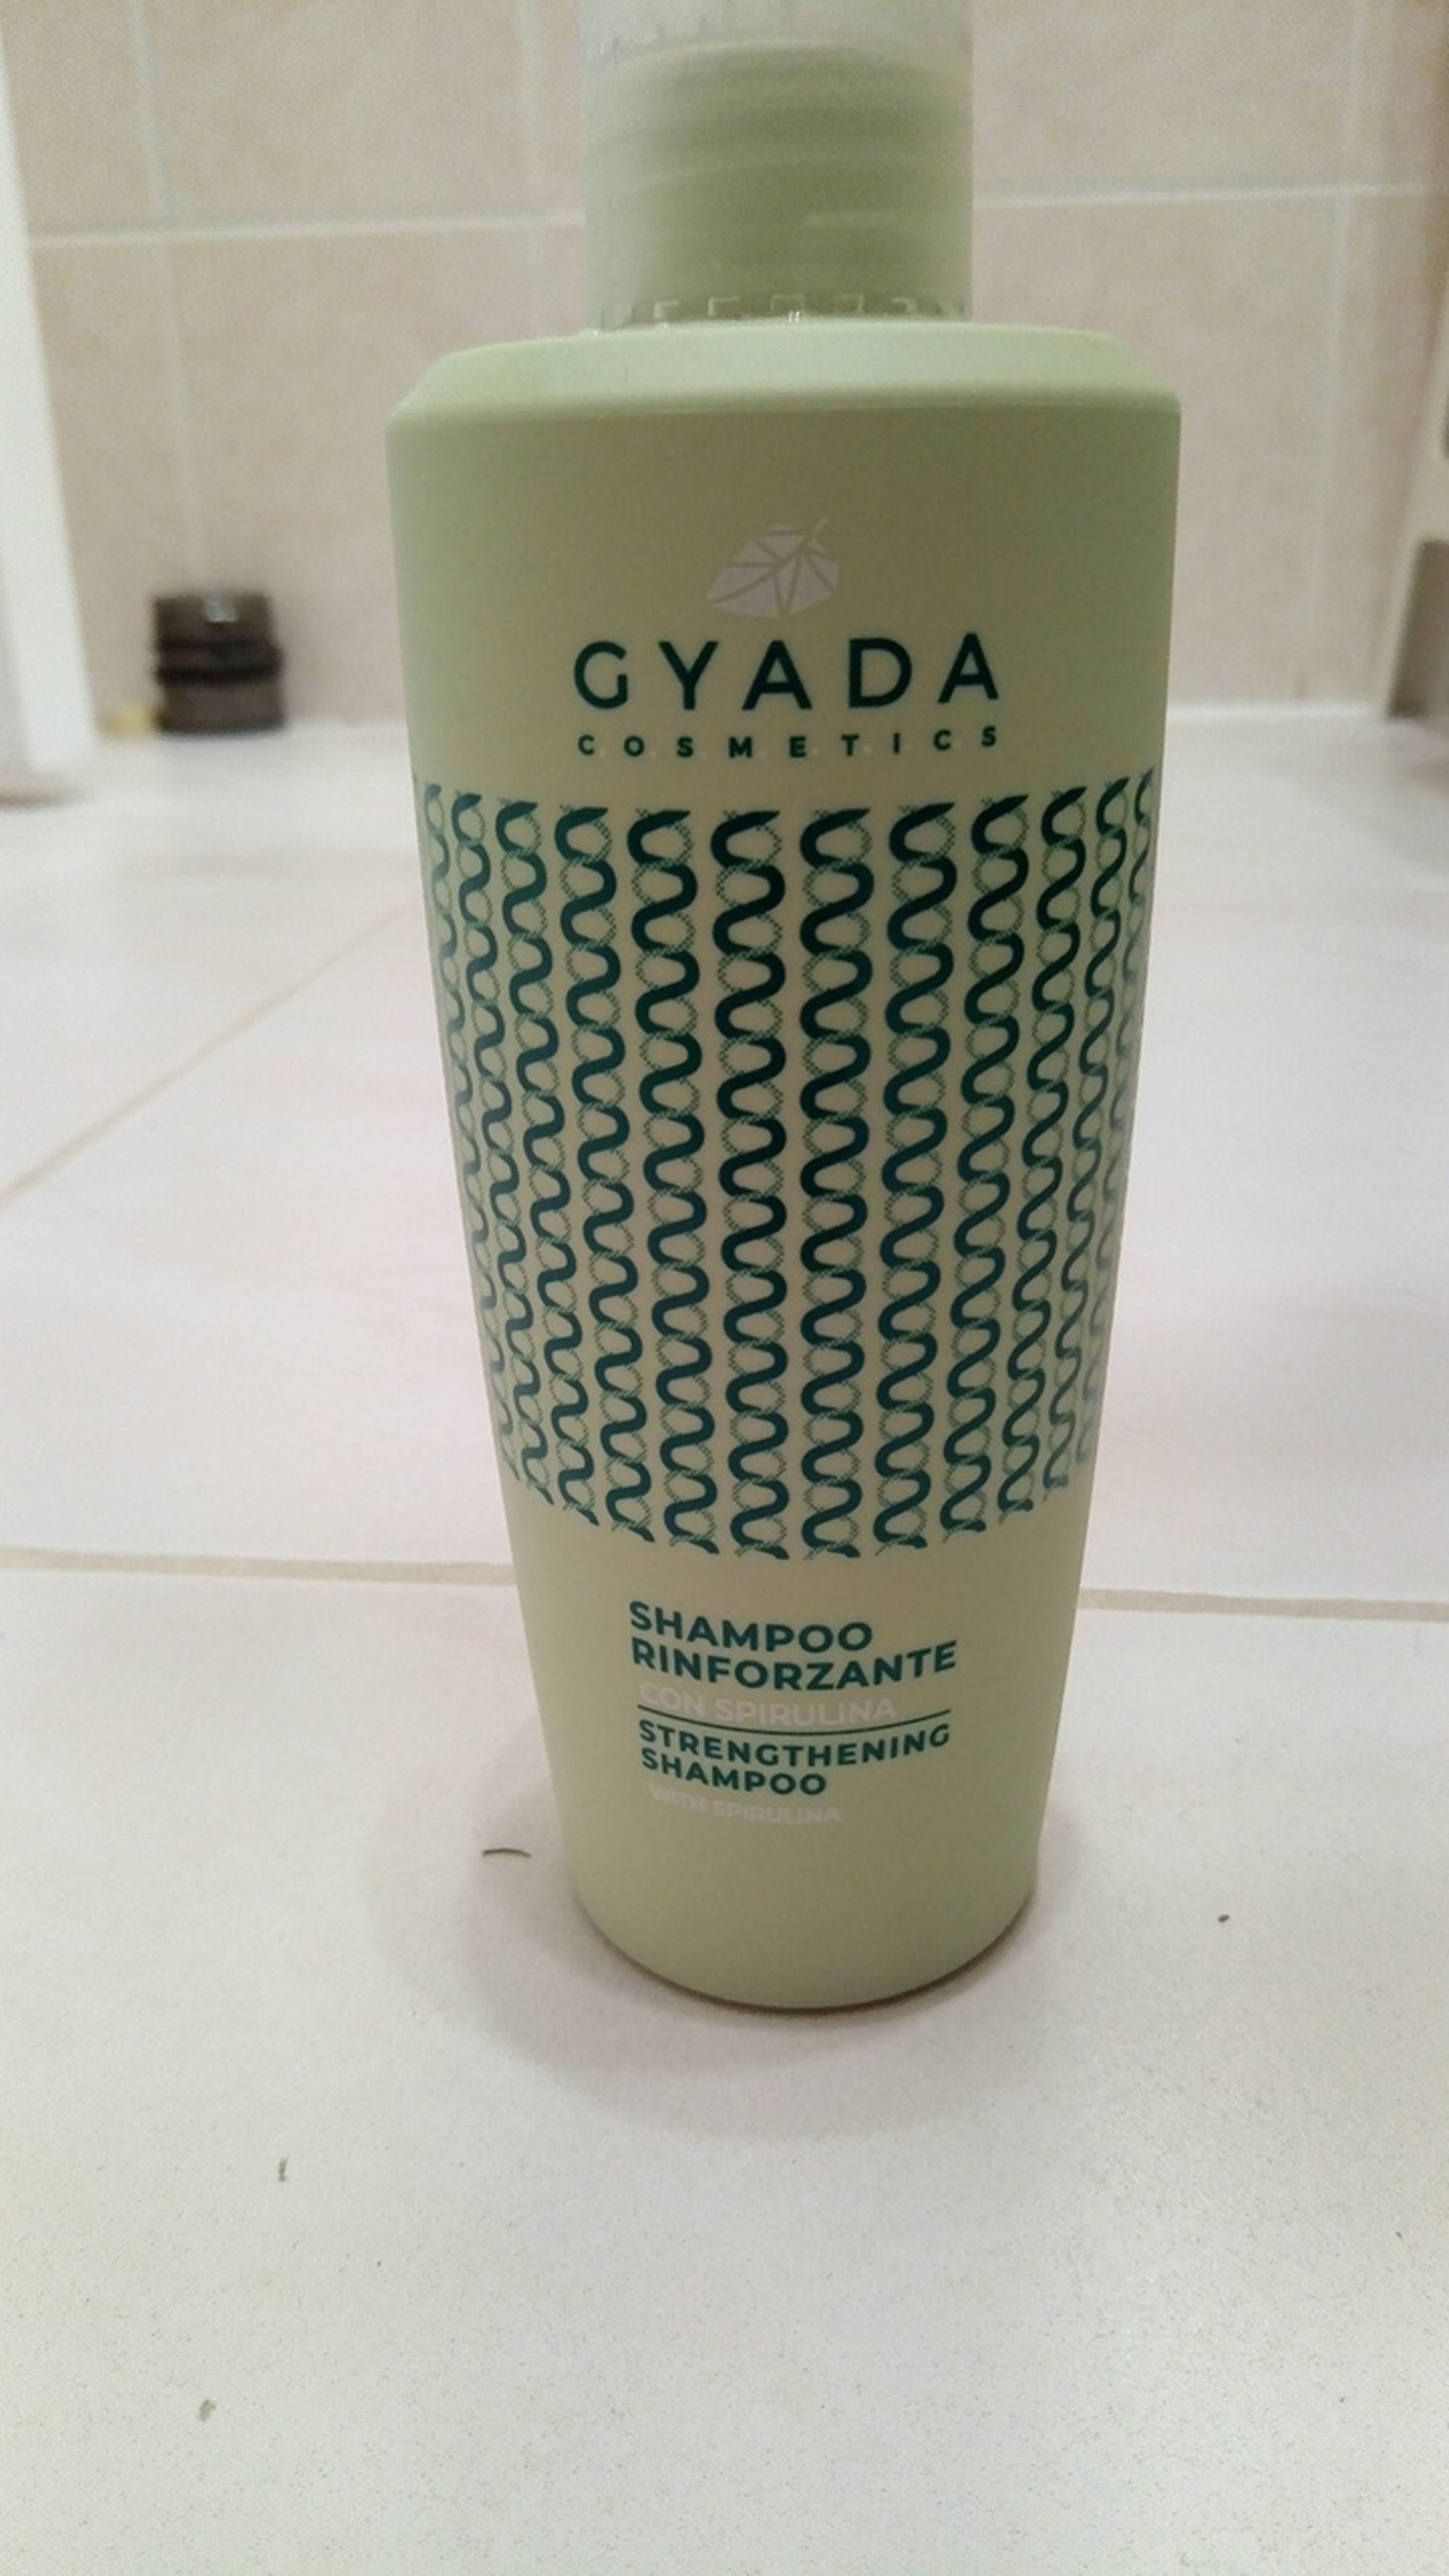 GYADA - Strengthening shampoo with spirulina